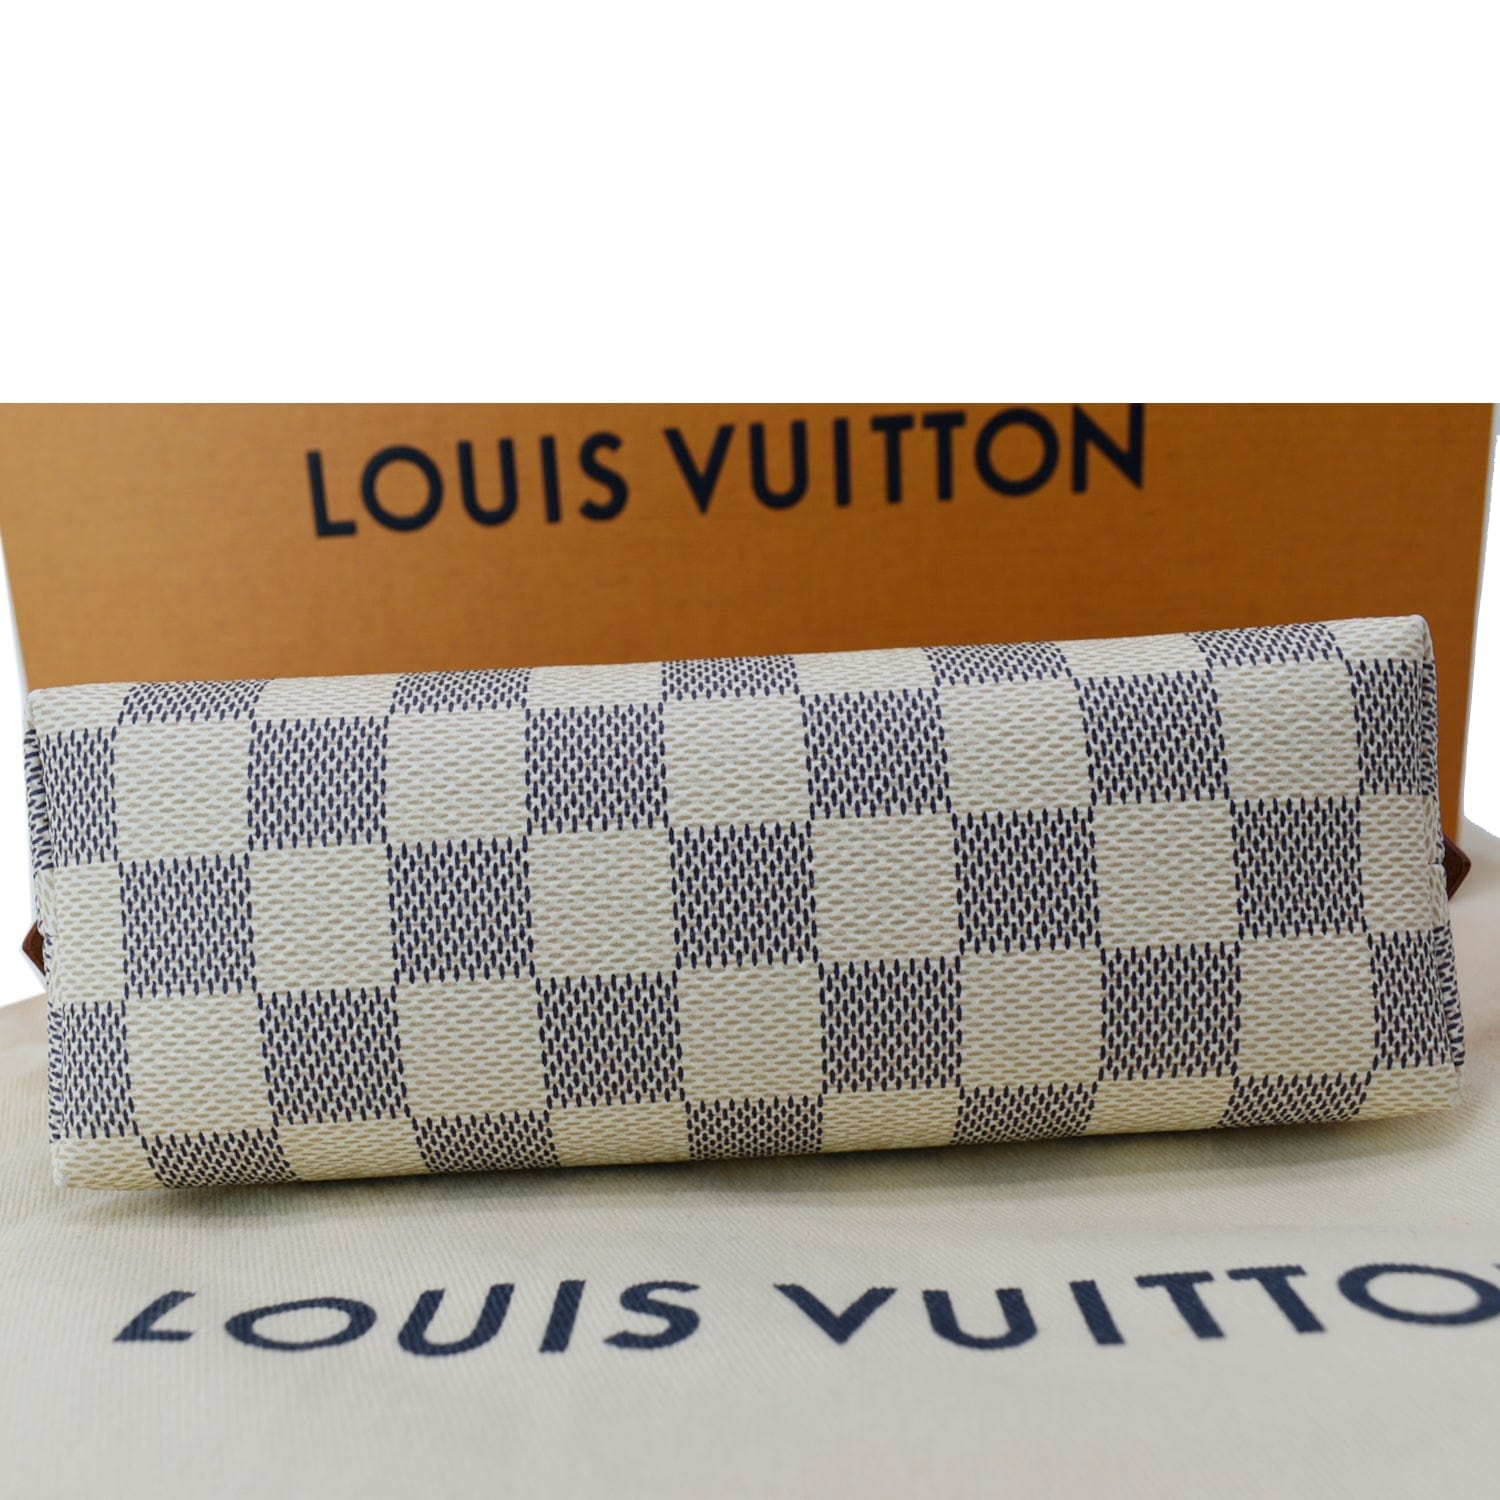 LOUIS VUITTON Damier Azur Cosmetic Pouch 1288479